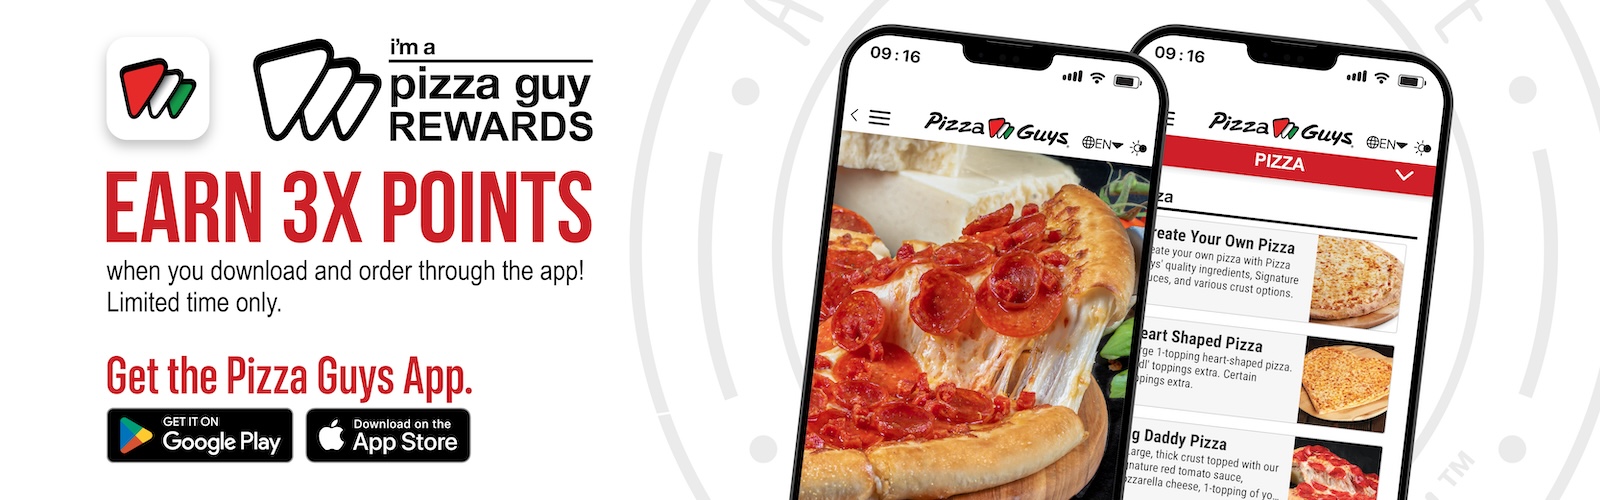 Pizzaguys App